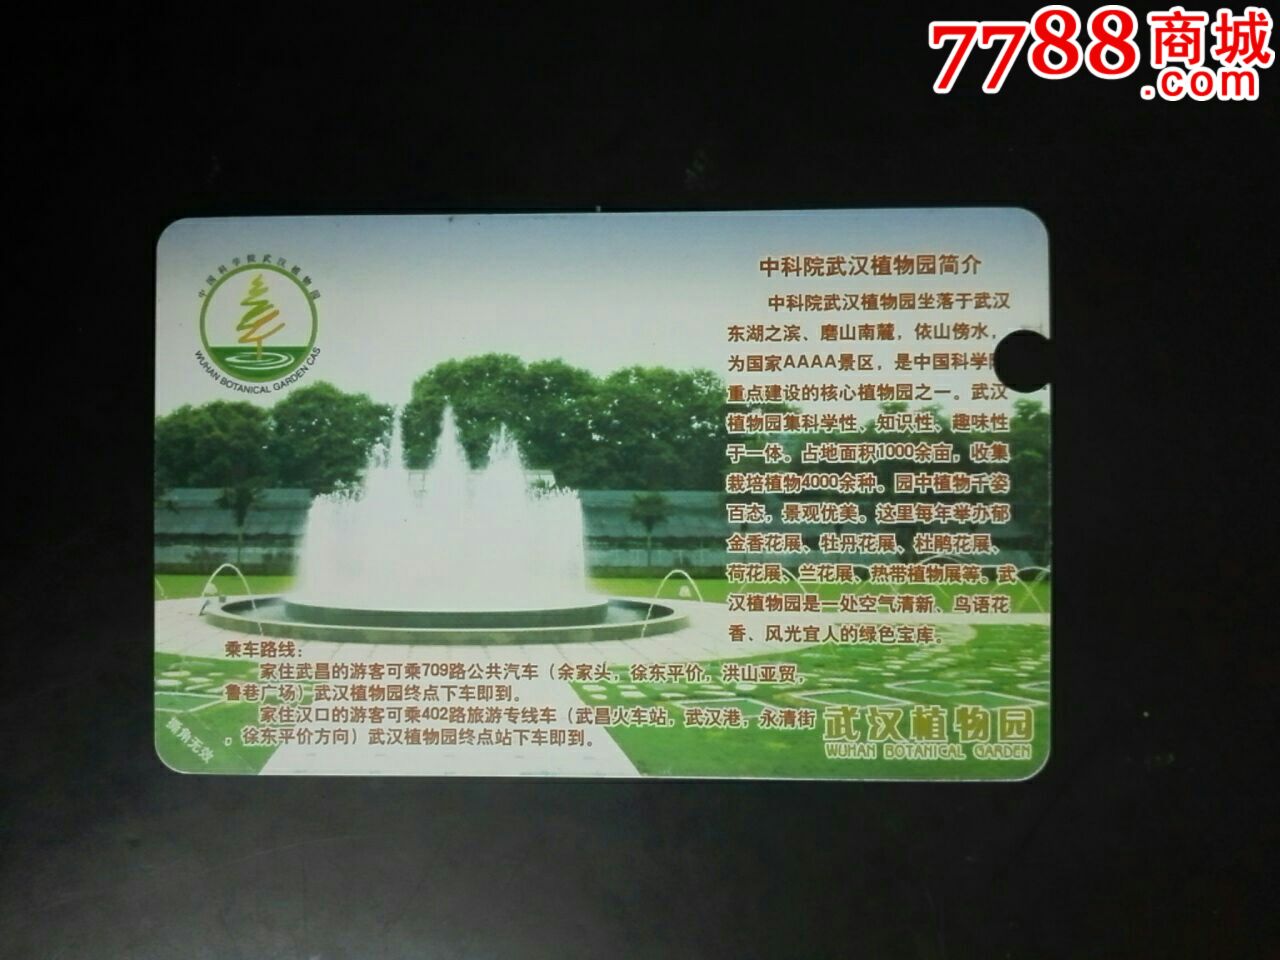 武汉植物园,门票卡